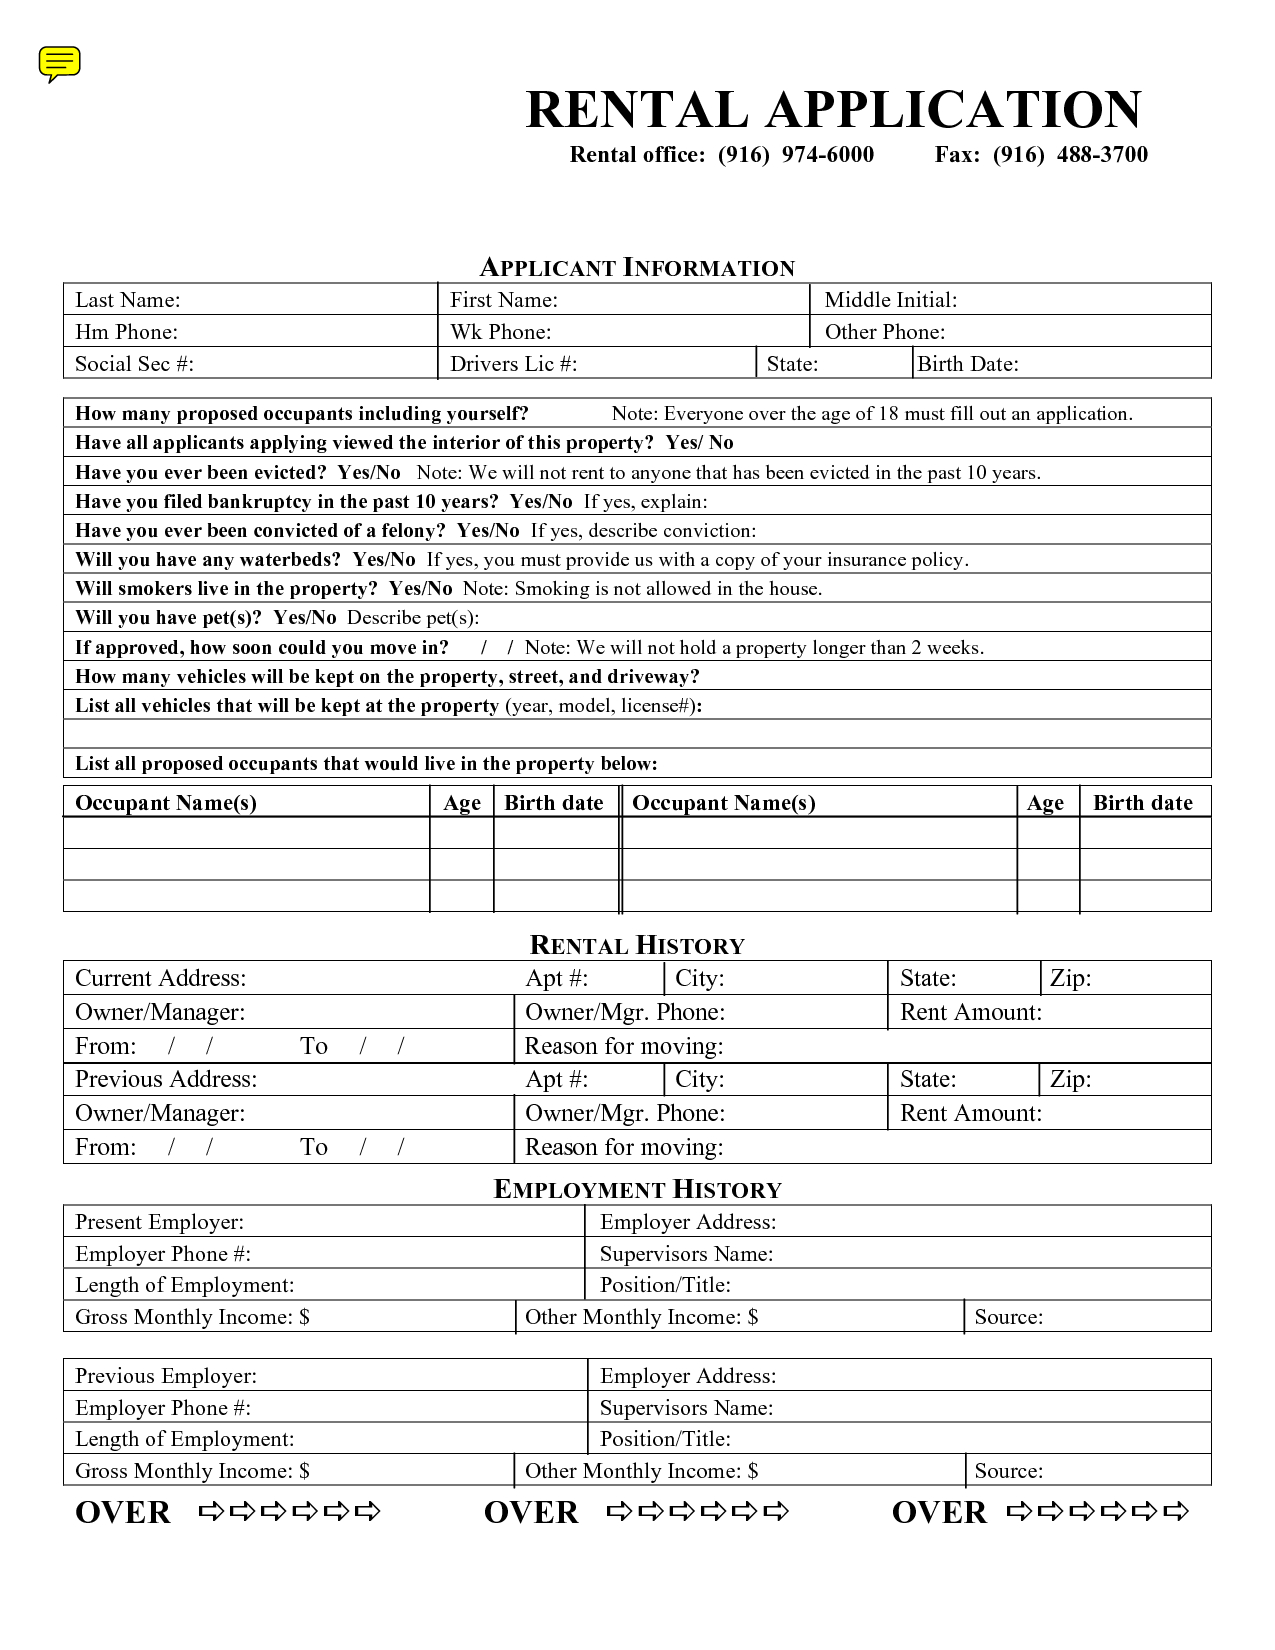 Free Rental Application Formmary_Jmenintigar - House Rental - Free Printable House Rental Application Form